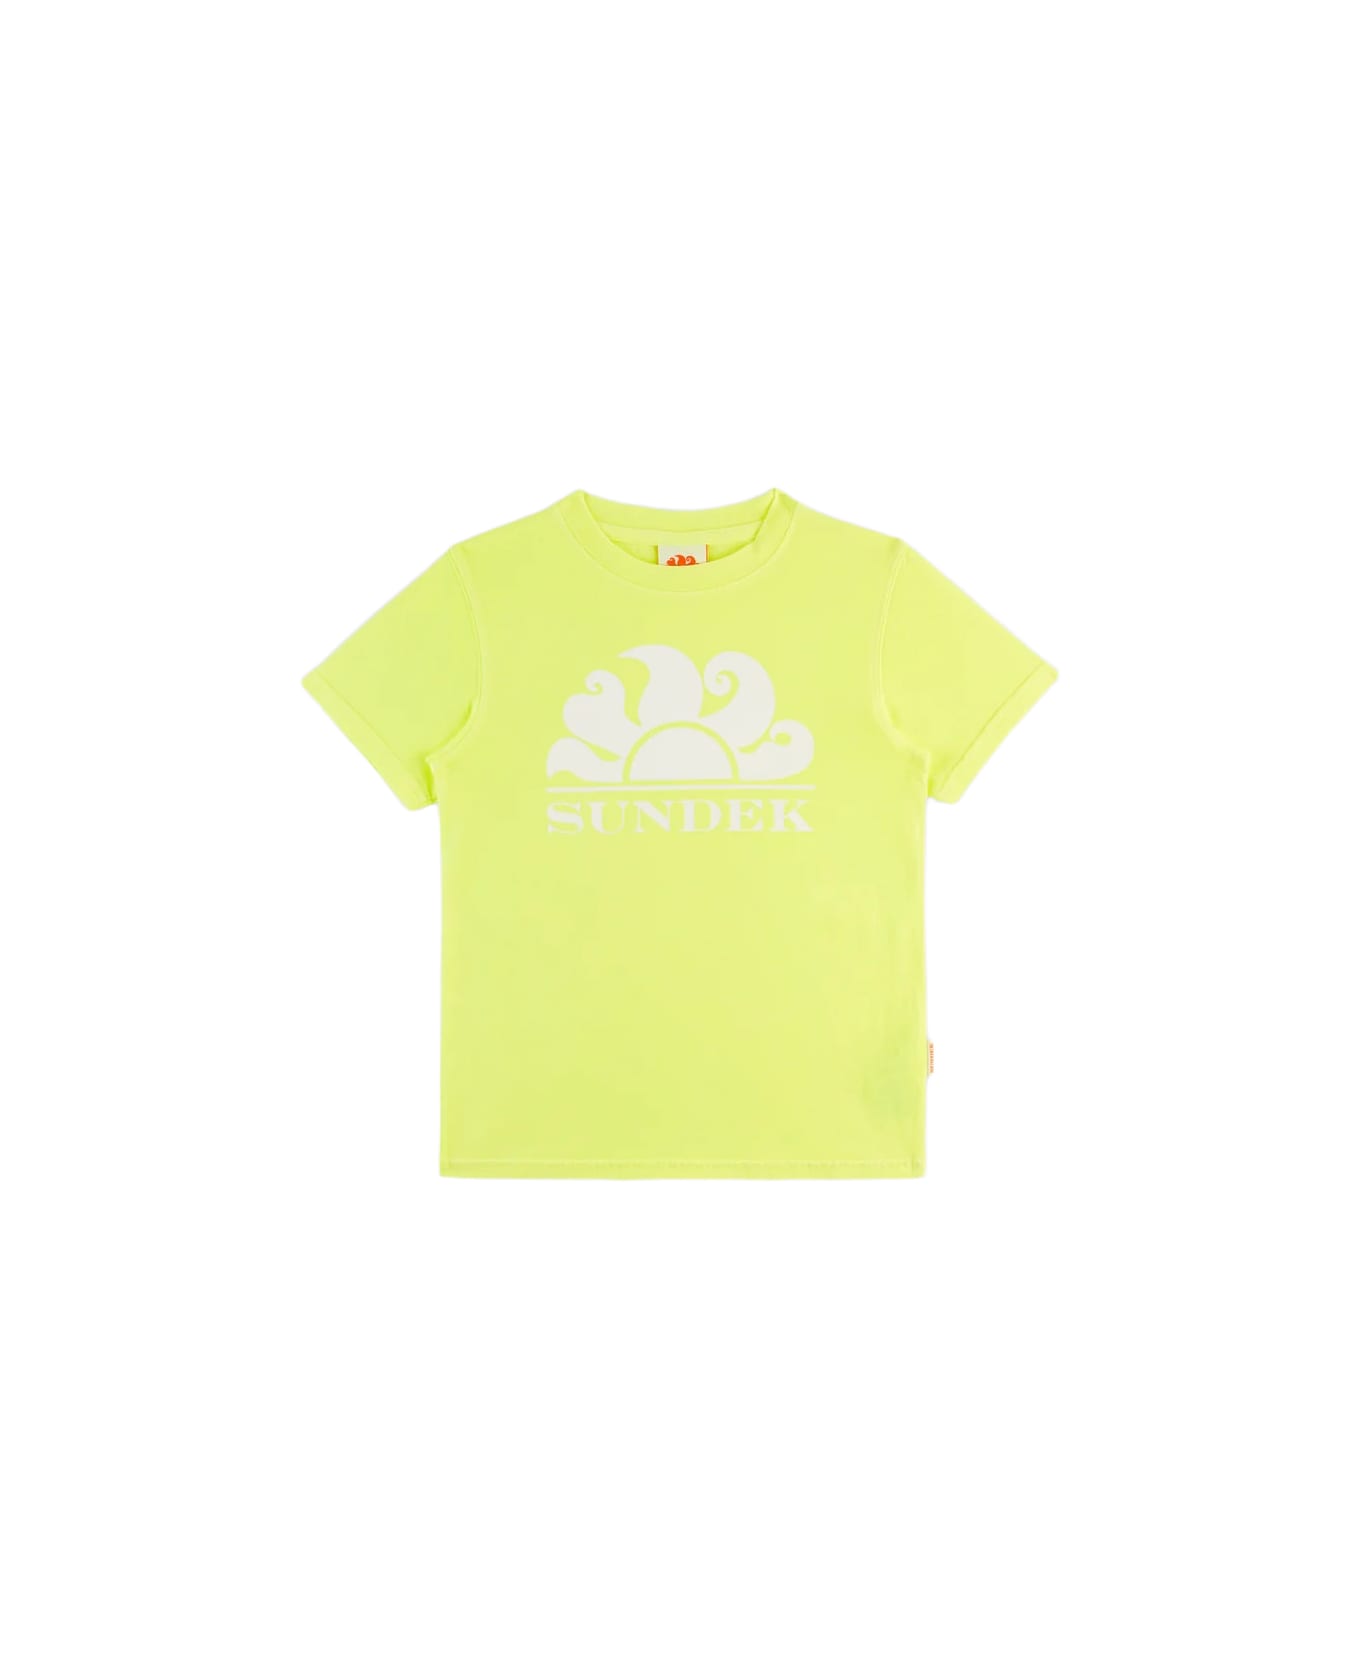 Sundek T-shirt Con Stampa - Yellow